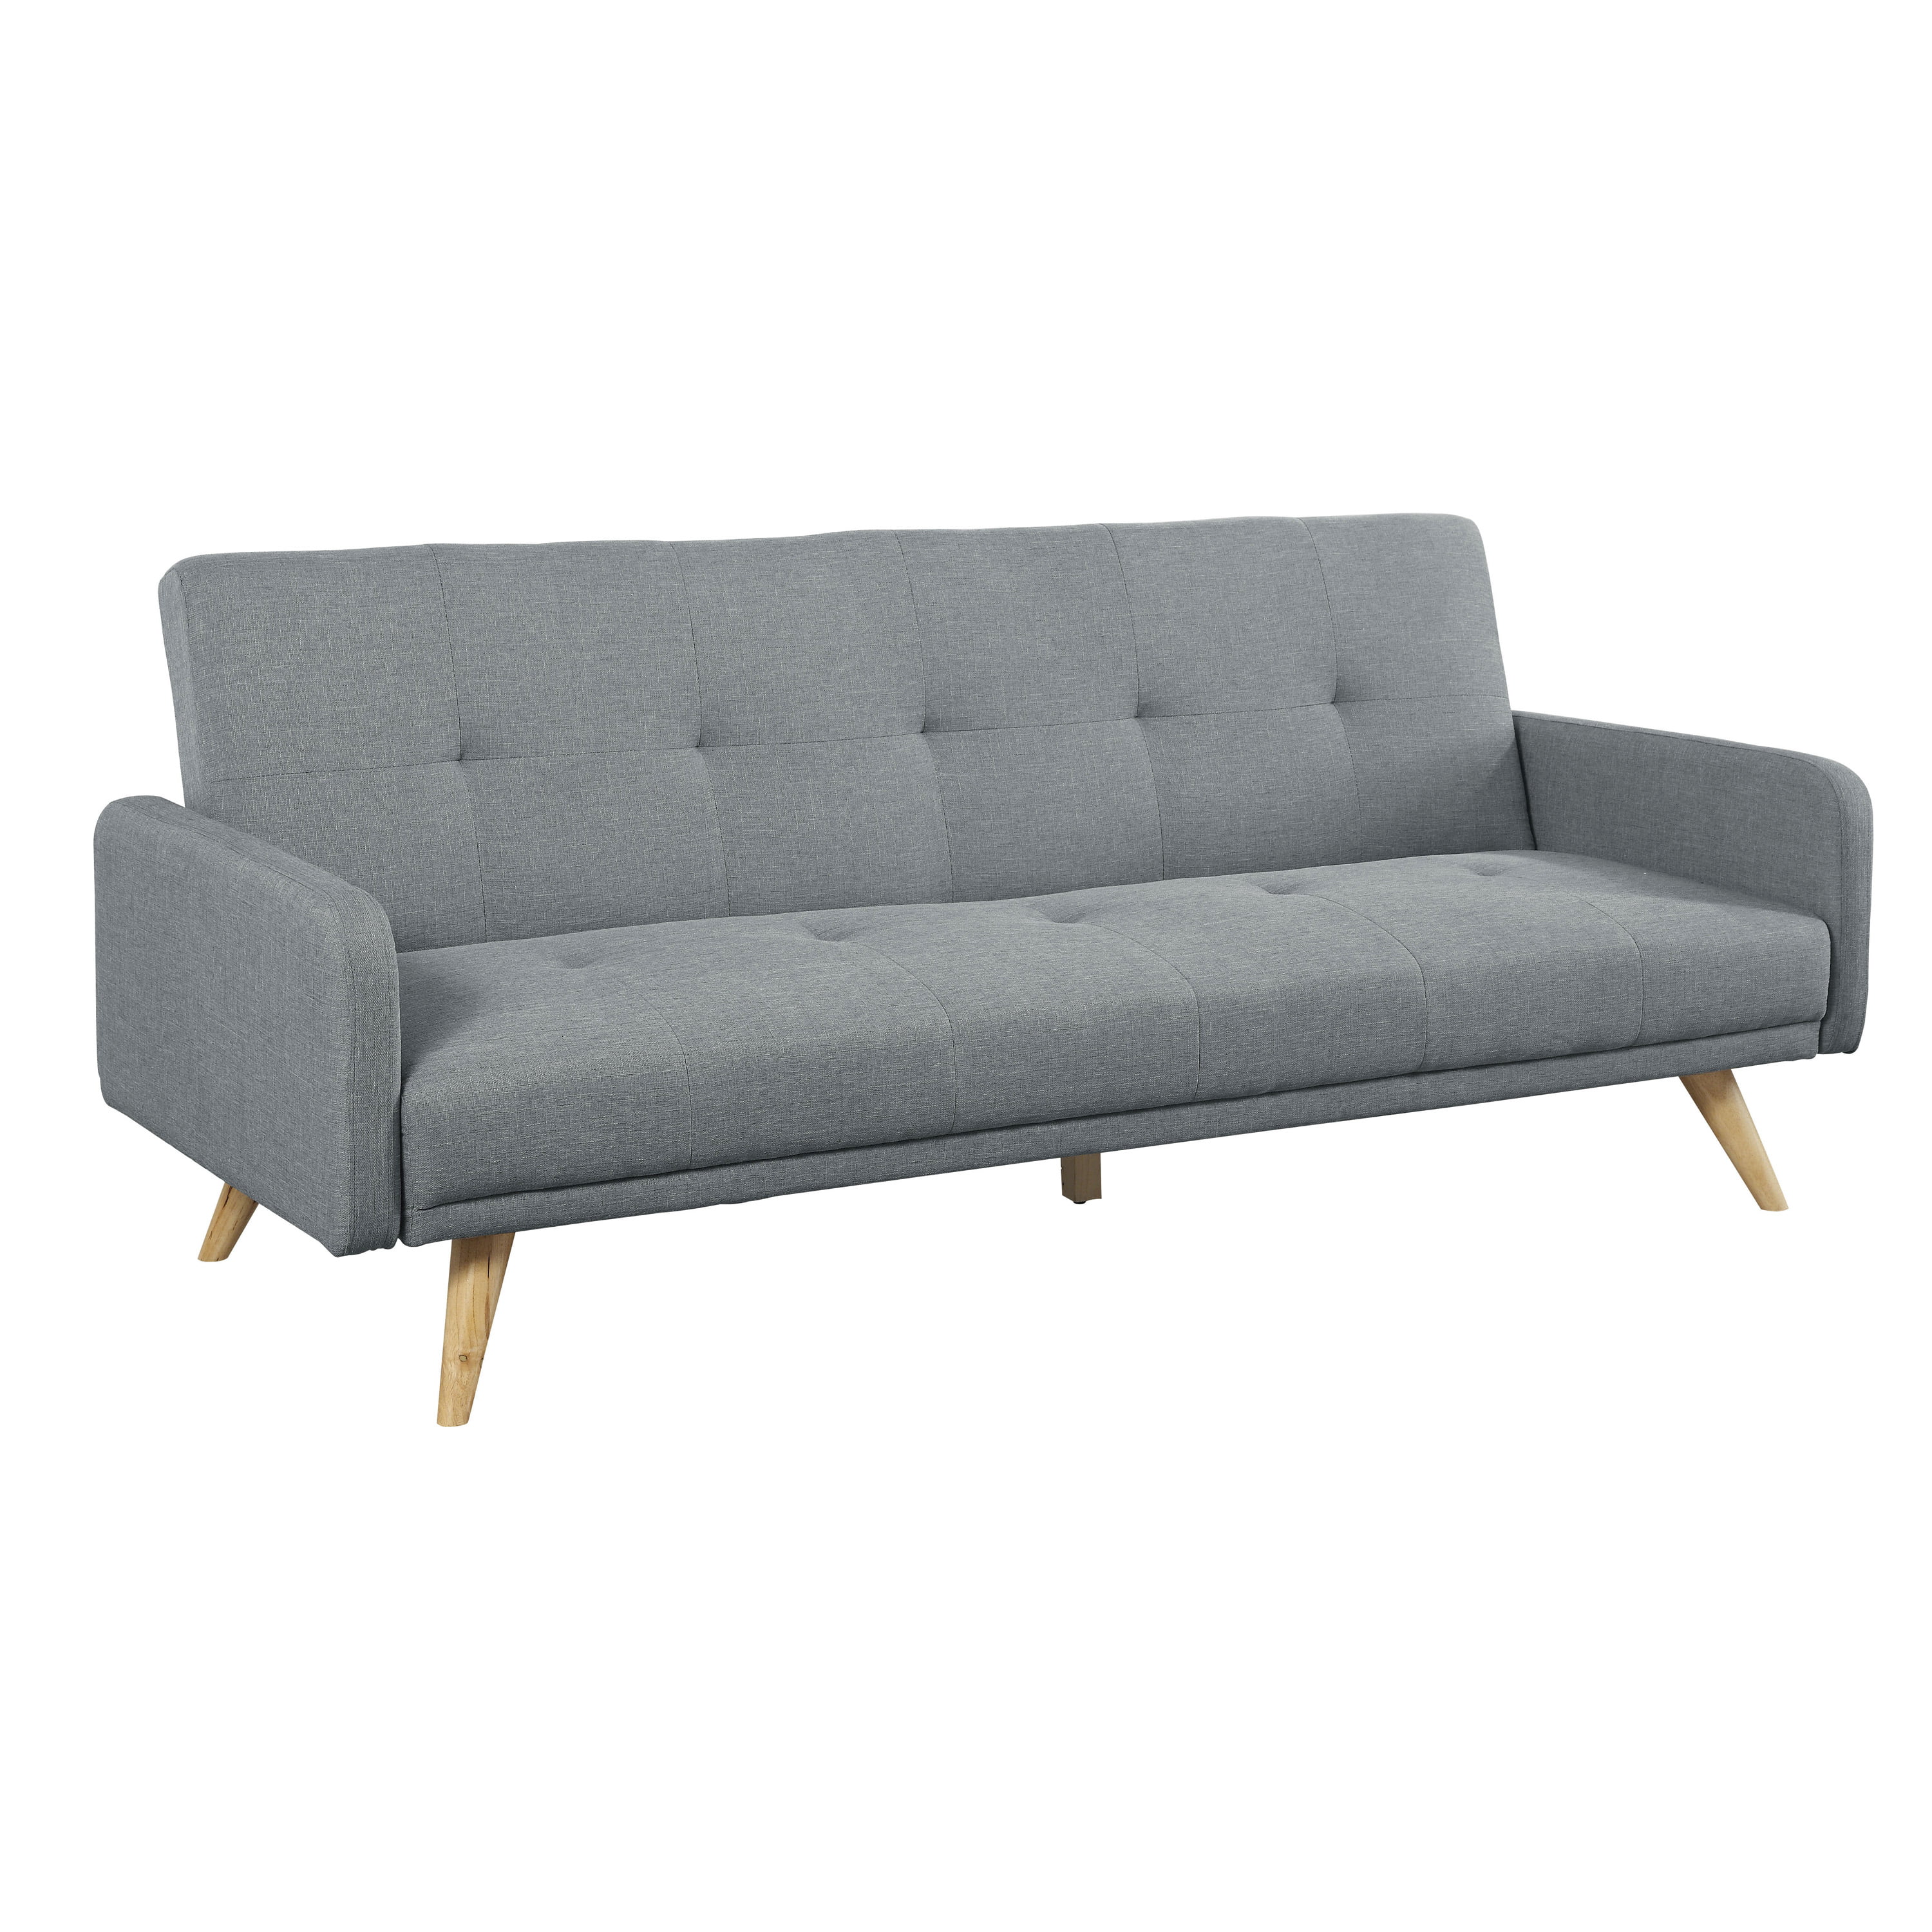 Vaak gesproken vervangen Een centrale tool die een belangrijke rol speelt Furniture of America Mid-Century Modern Faux Linen Utrecht Futon Sofa, Gray  - Walmart.com